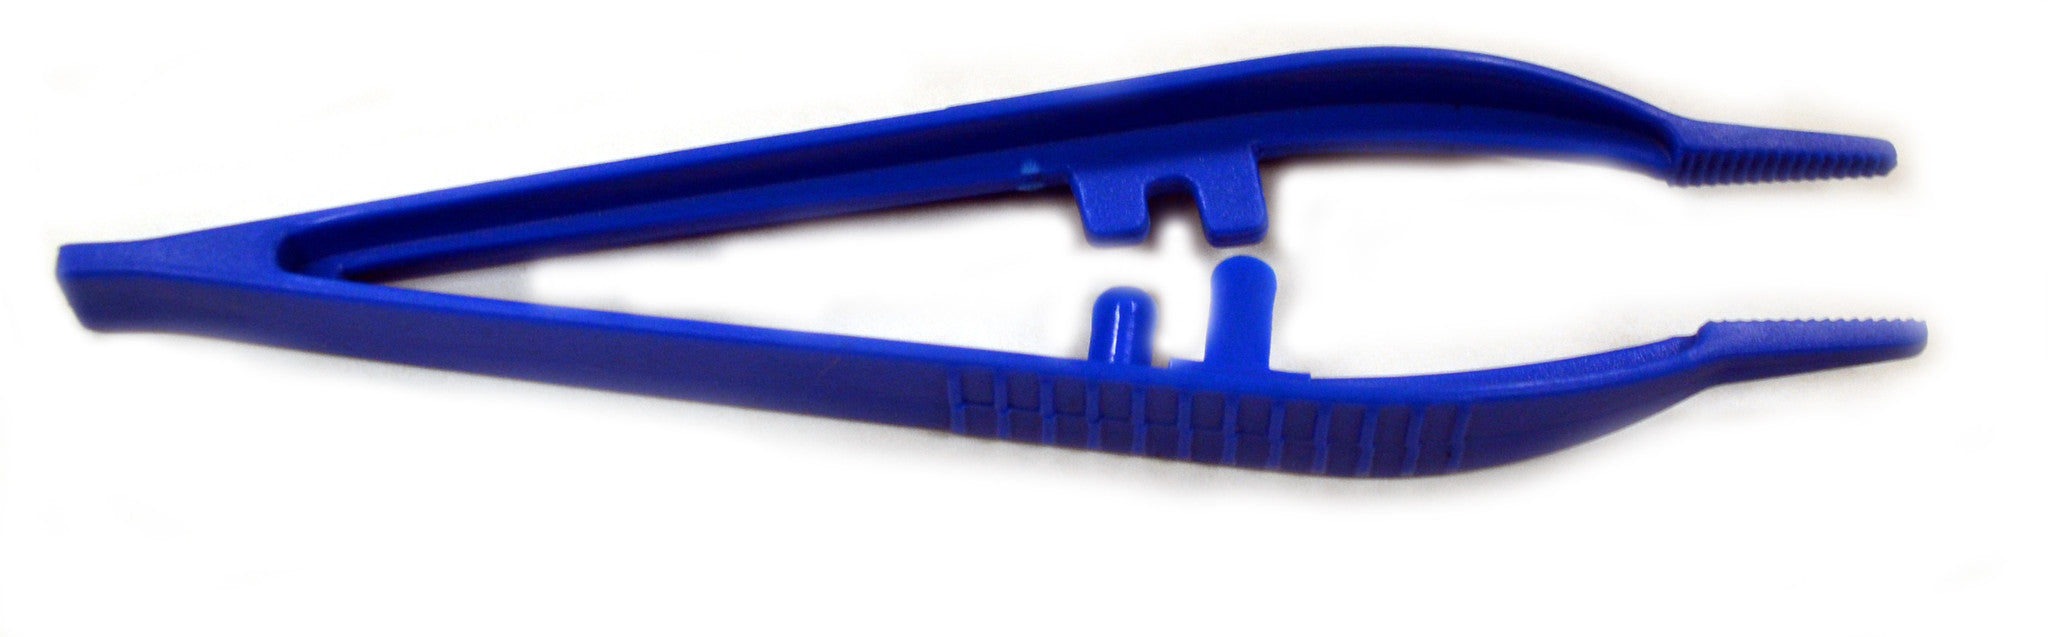 Plastic Forceps (Tweezers), 5in. , Pack of 10